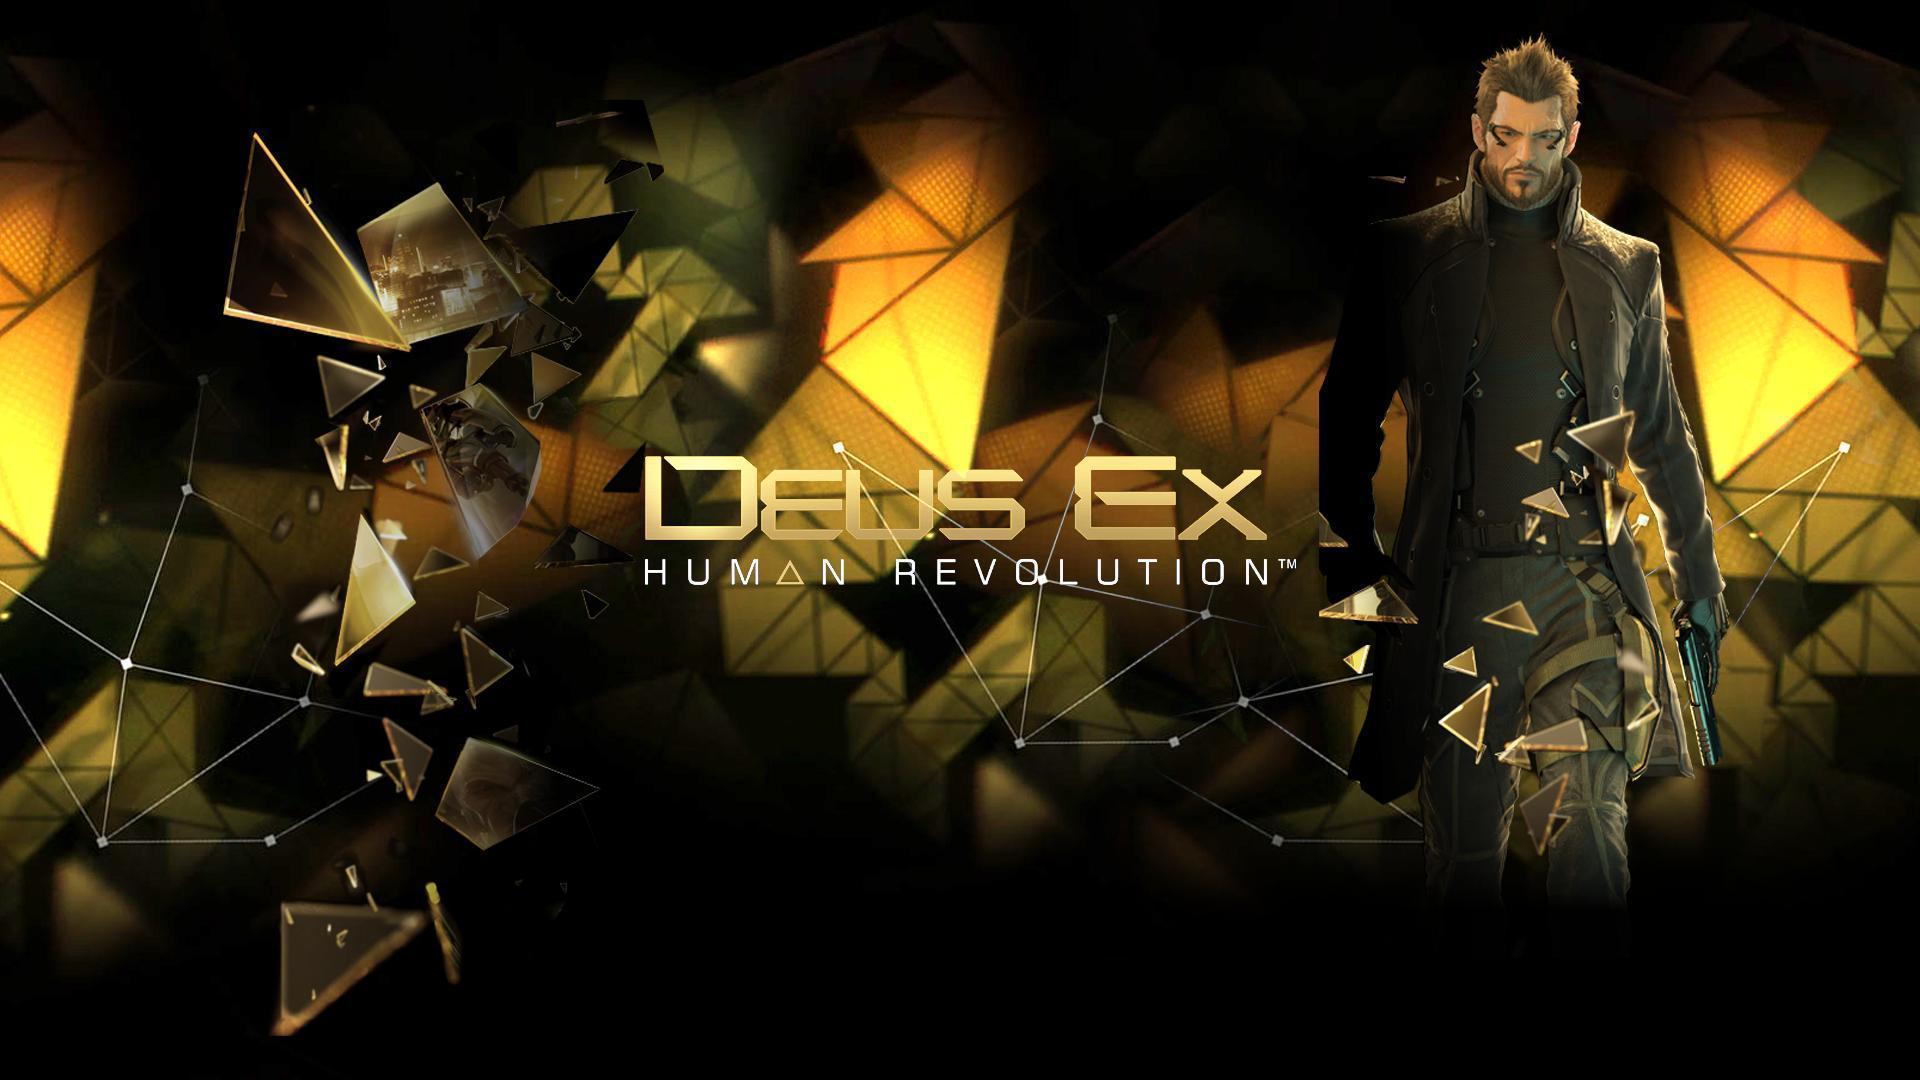 Deus Ex Human Revolution Wallpaper. HD Wallpaper Base